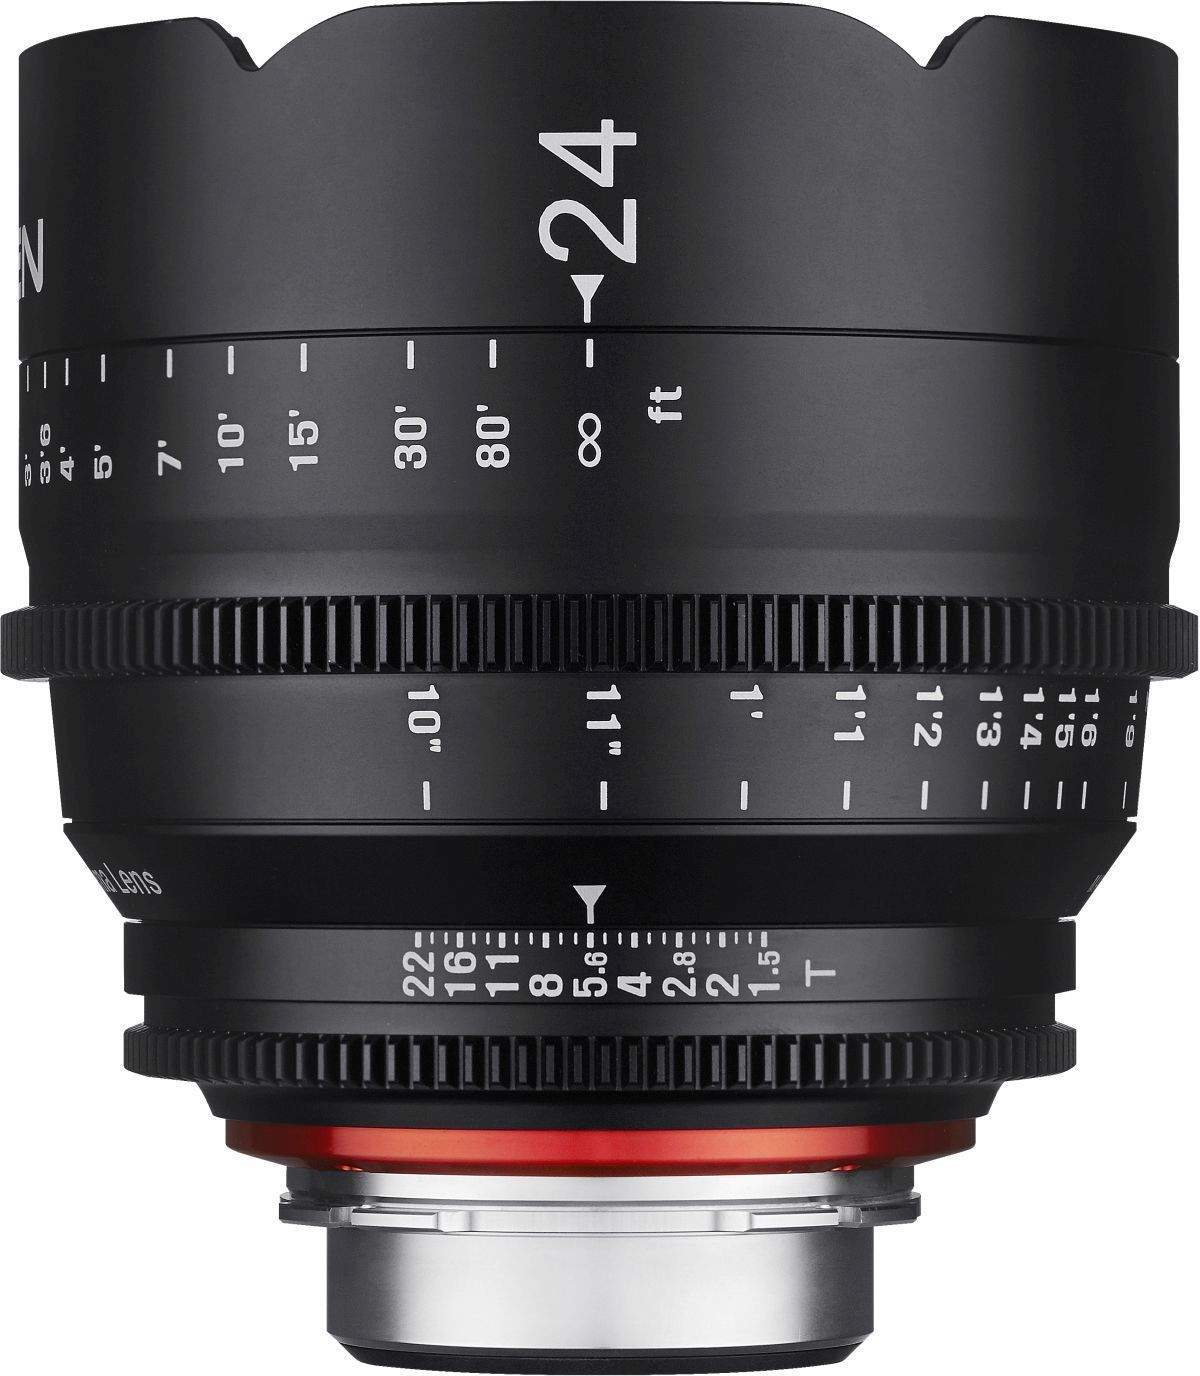 24mm T1.5 XEEN Sony FE Full Frame Cinema Lens